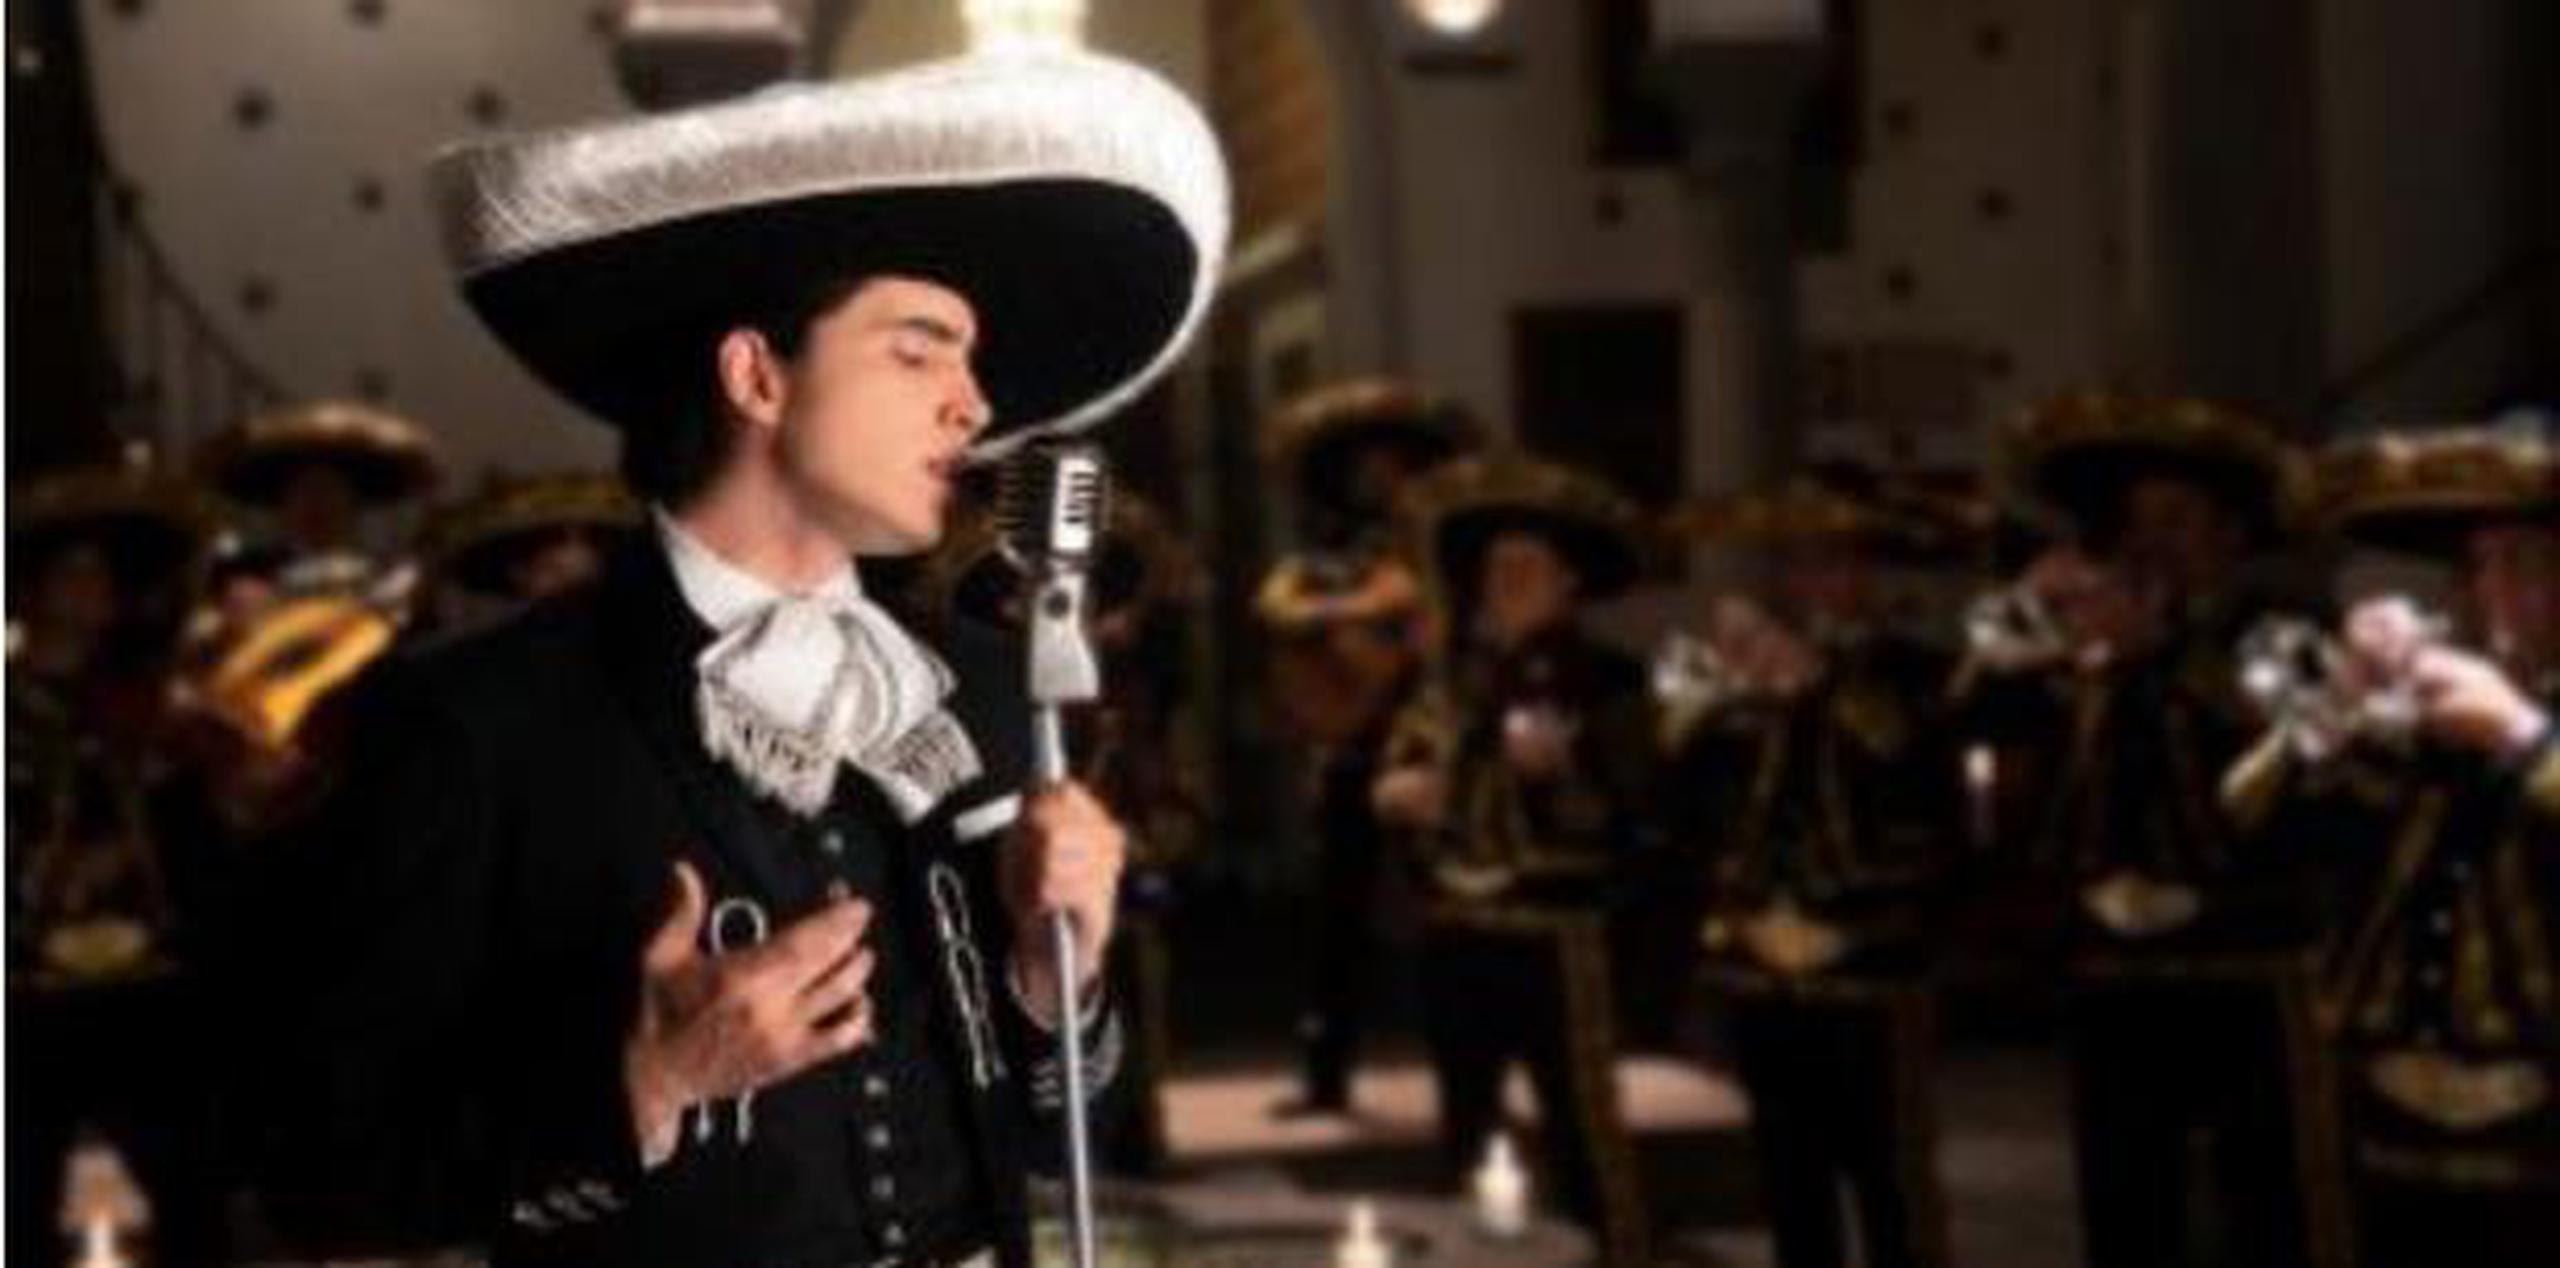 El joven cantante forma parte de la tercera generación de músicos de rancheras ya que, además de ser hijo de Alejandro Fernández, es nieto de uno de los artistas más populares de México, Vicente Fernández, quien se retiró de los escenarios en 2016 pero lanzó su último disco el pasado agosto. (EFE)